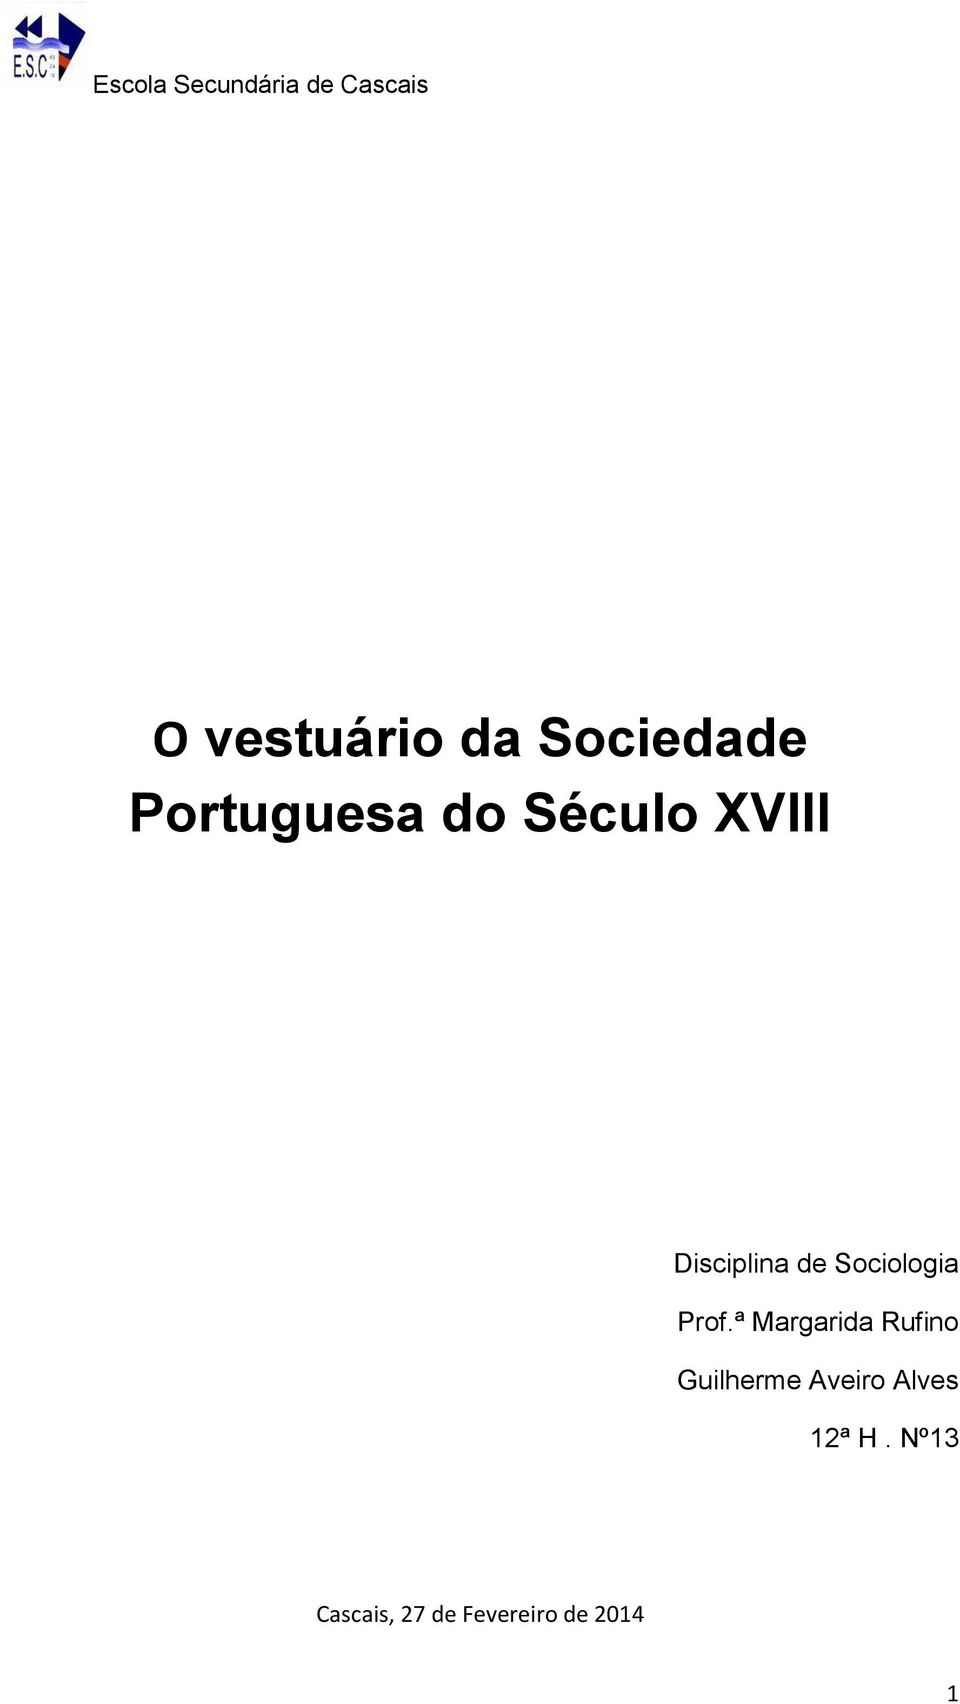 O vestuário da Sociedade Portuguesa do Século XVIII - PDF Free Download